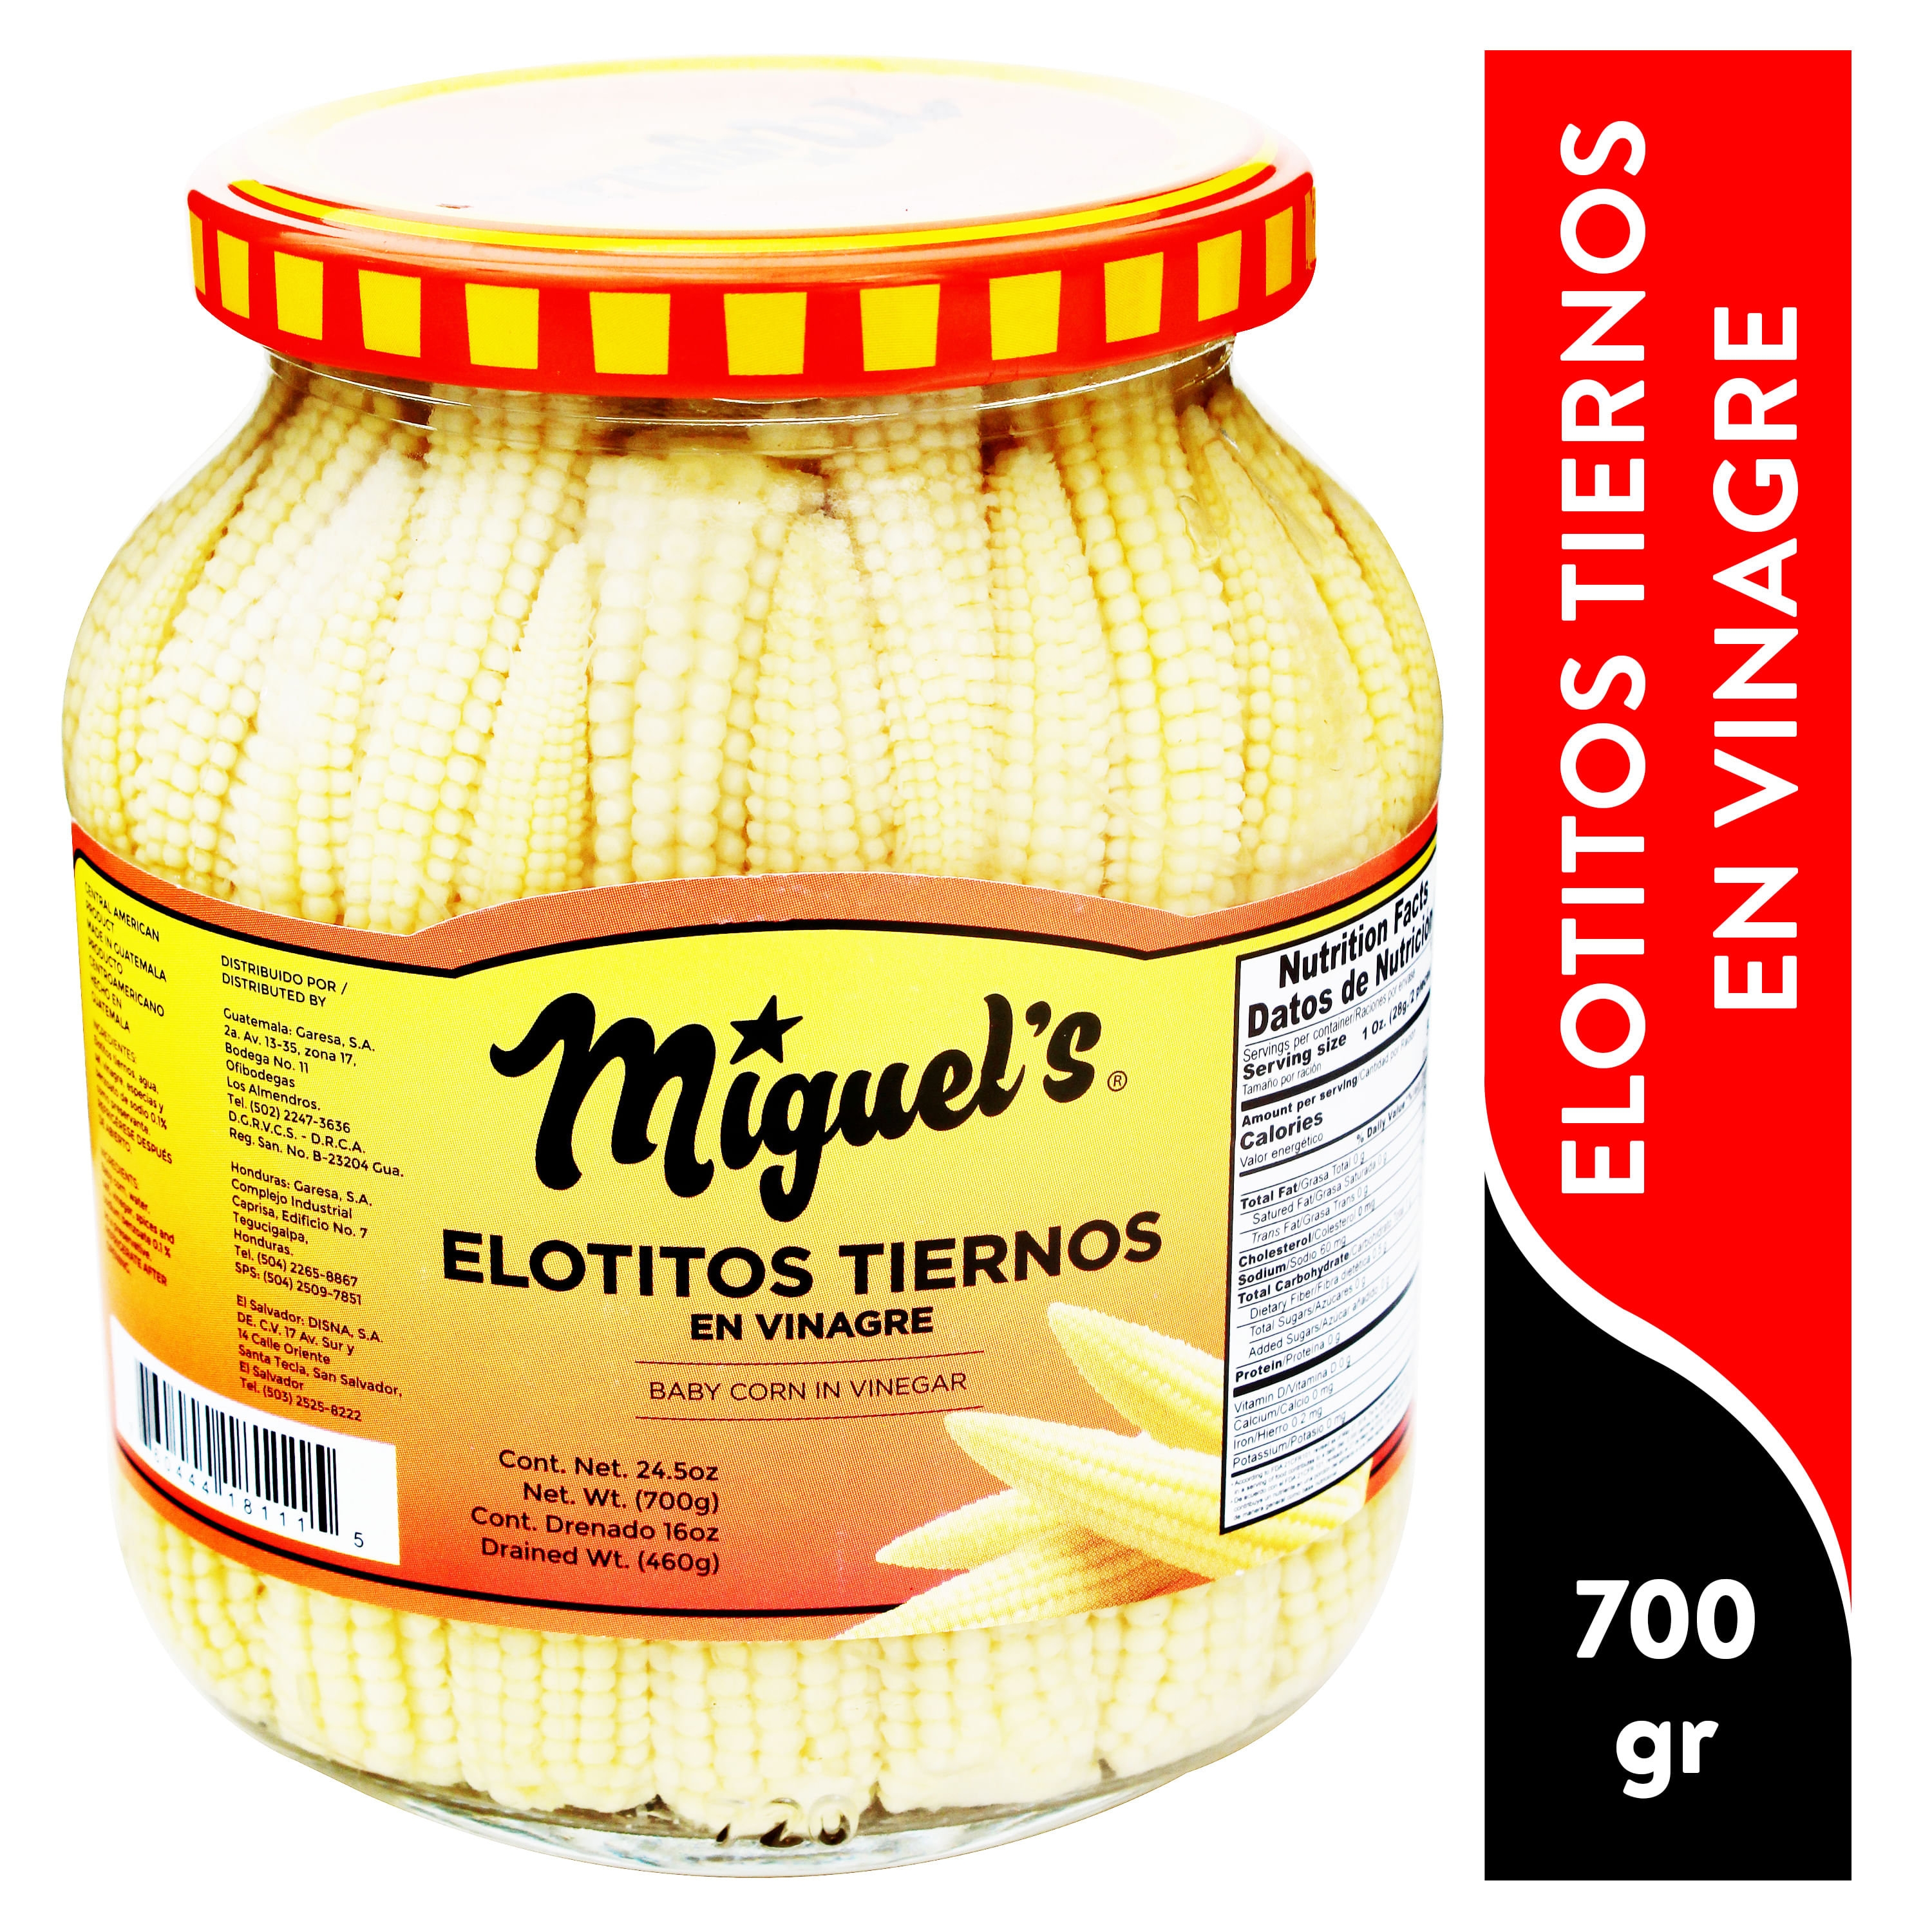 Elotito-Miguel-s-Tierno-Enteros-en-Vinagre-700gr-1-15231